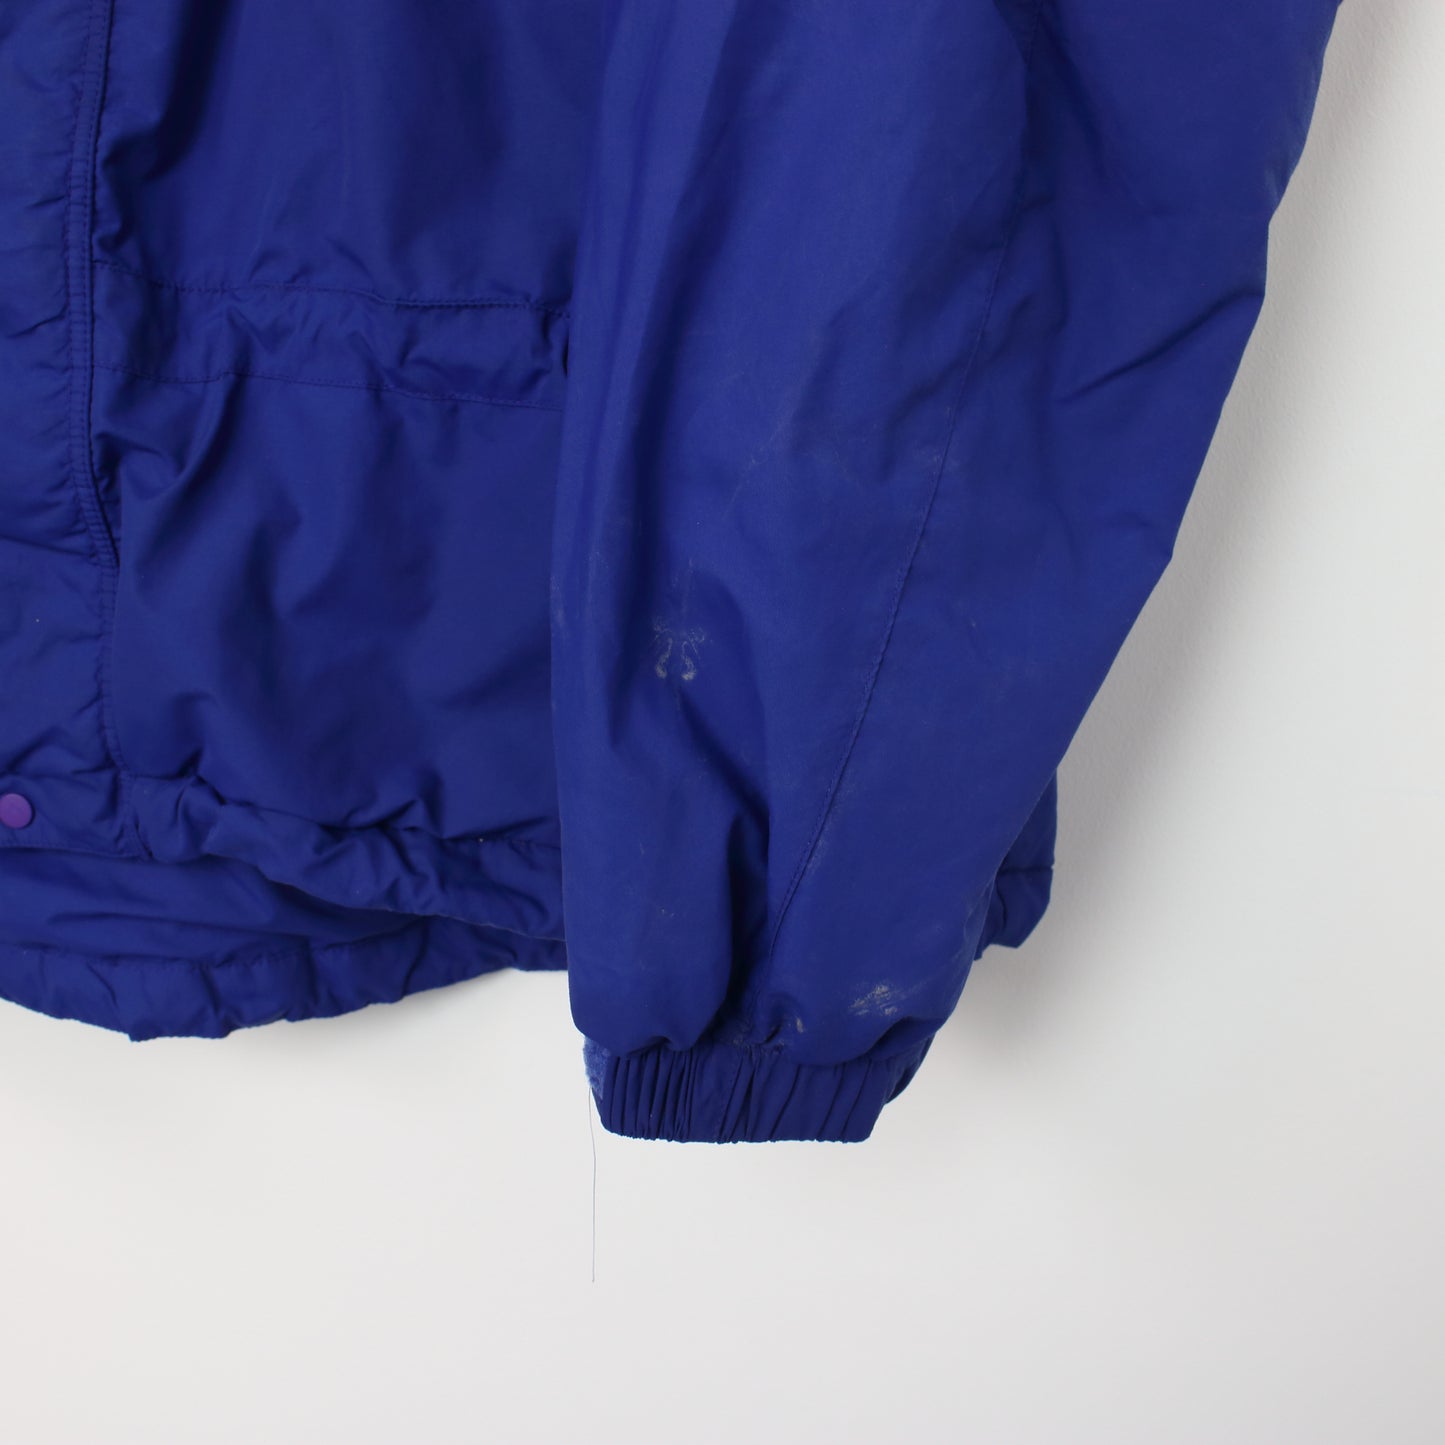 Vintage Patagonia full zip jacket in blue. Best fits L